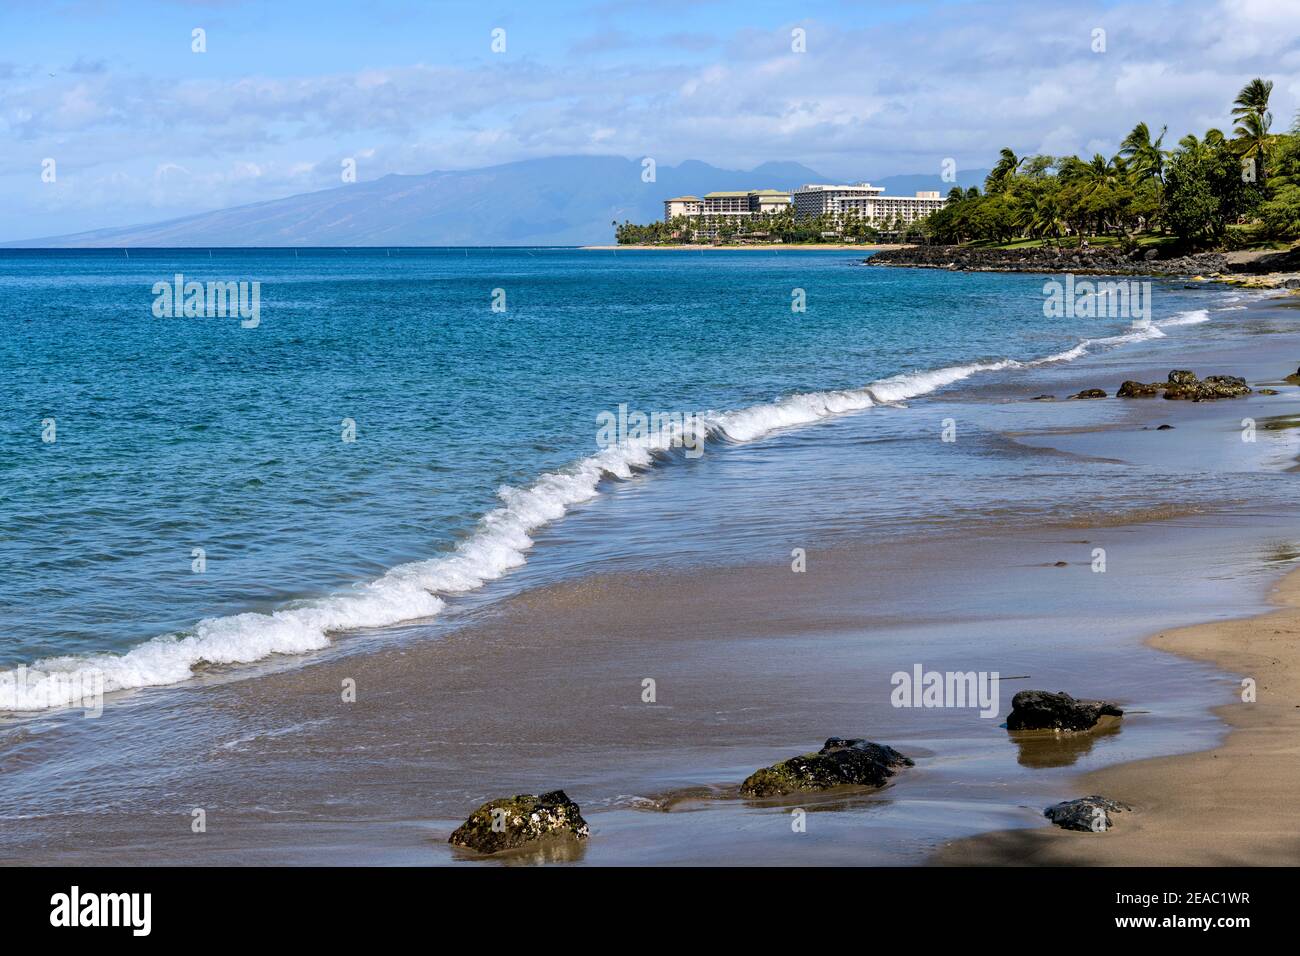 Maui Coast - una vista soleggiata di una tranquilla spiaggia di sabbia sulla costa nord-occidentale di Maui, Hawaii, USA. Foto Stock